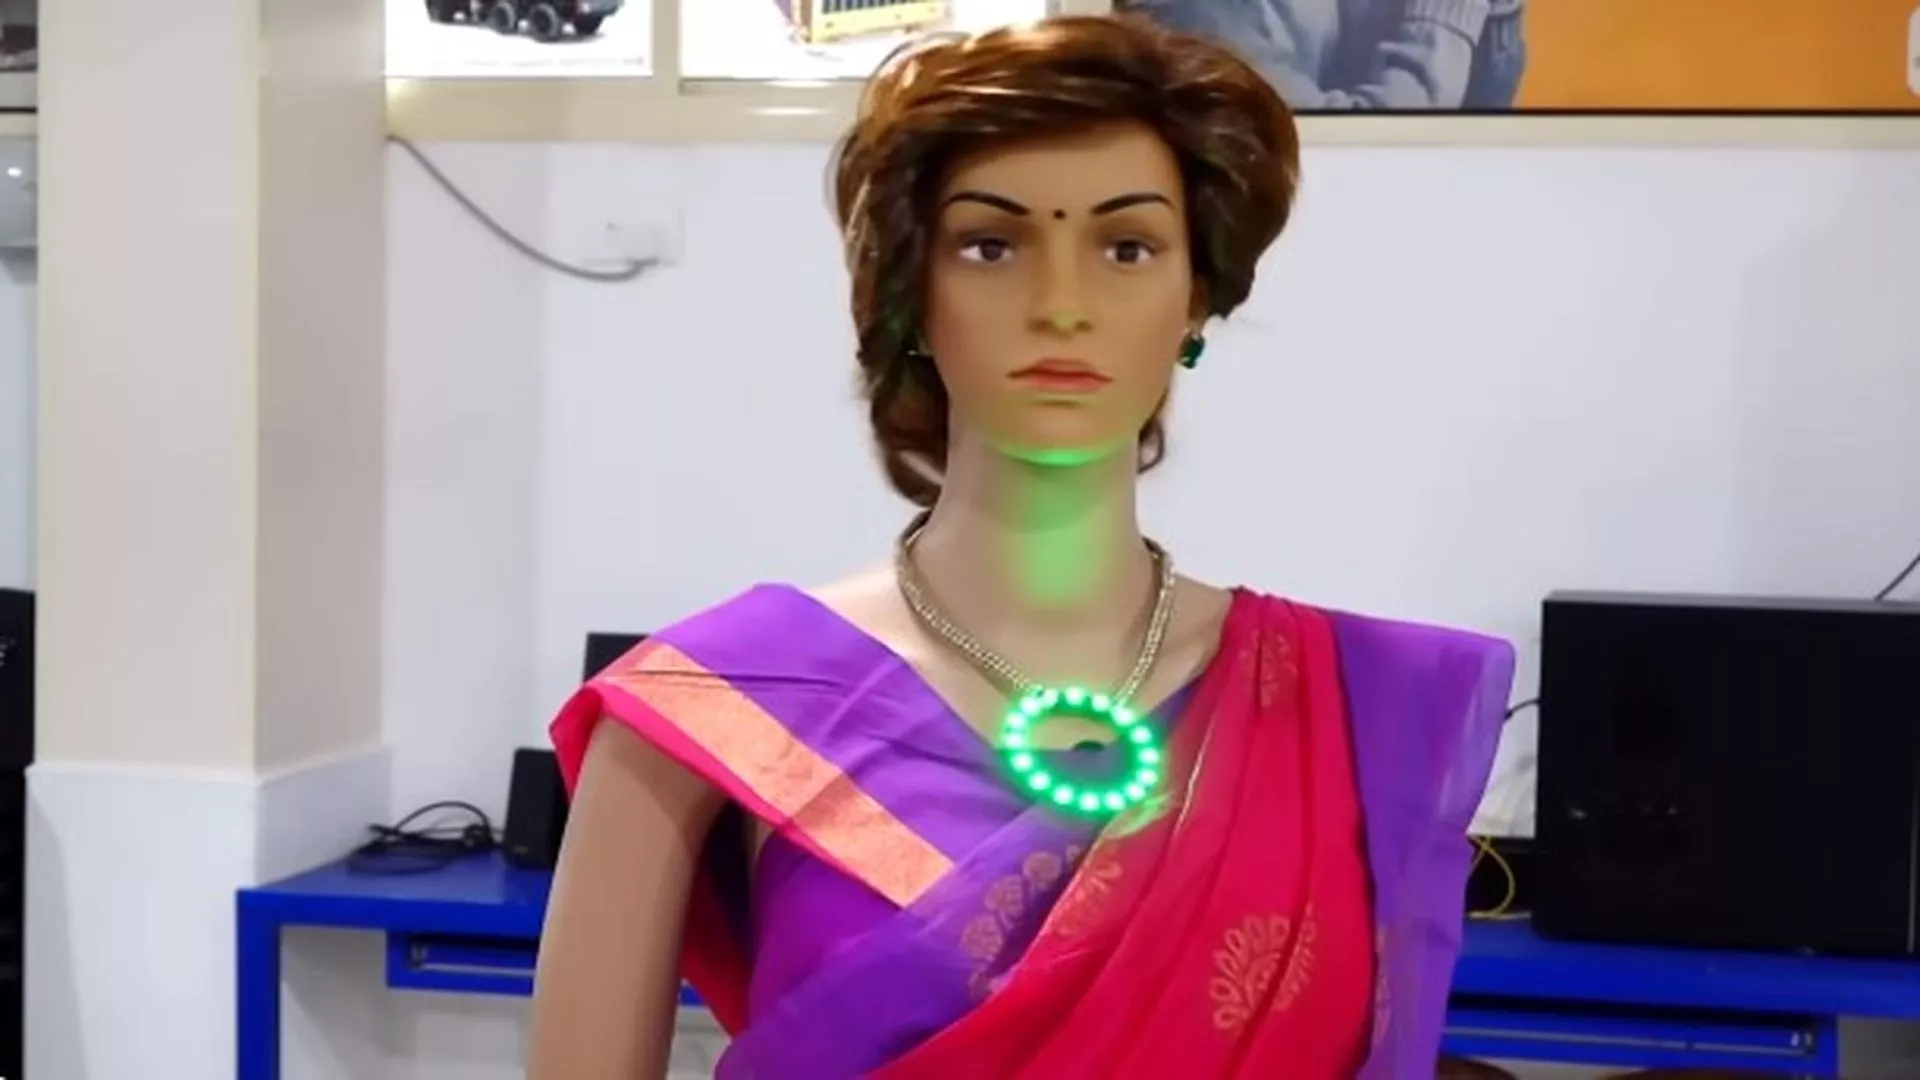 Conoce a Iris la primera robot profesora con IA de India